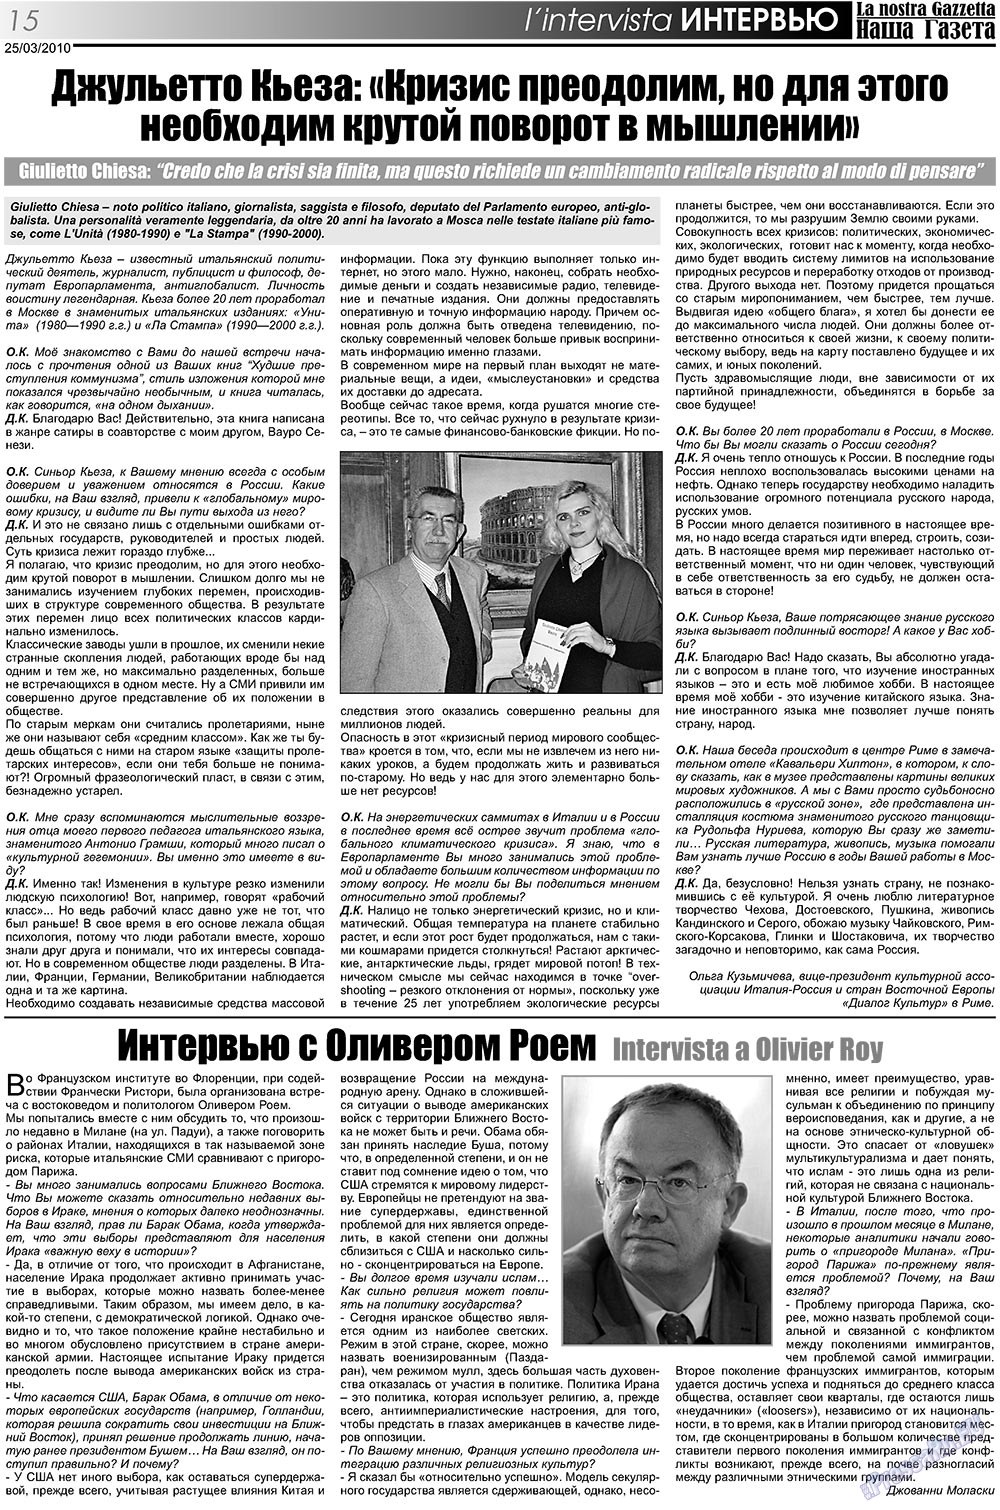 Nascha Gazeta (Zeitung). 2010 Jahr, Ausgabe 105, Seite 15